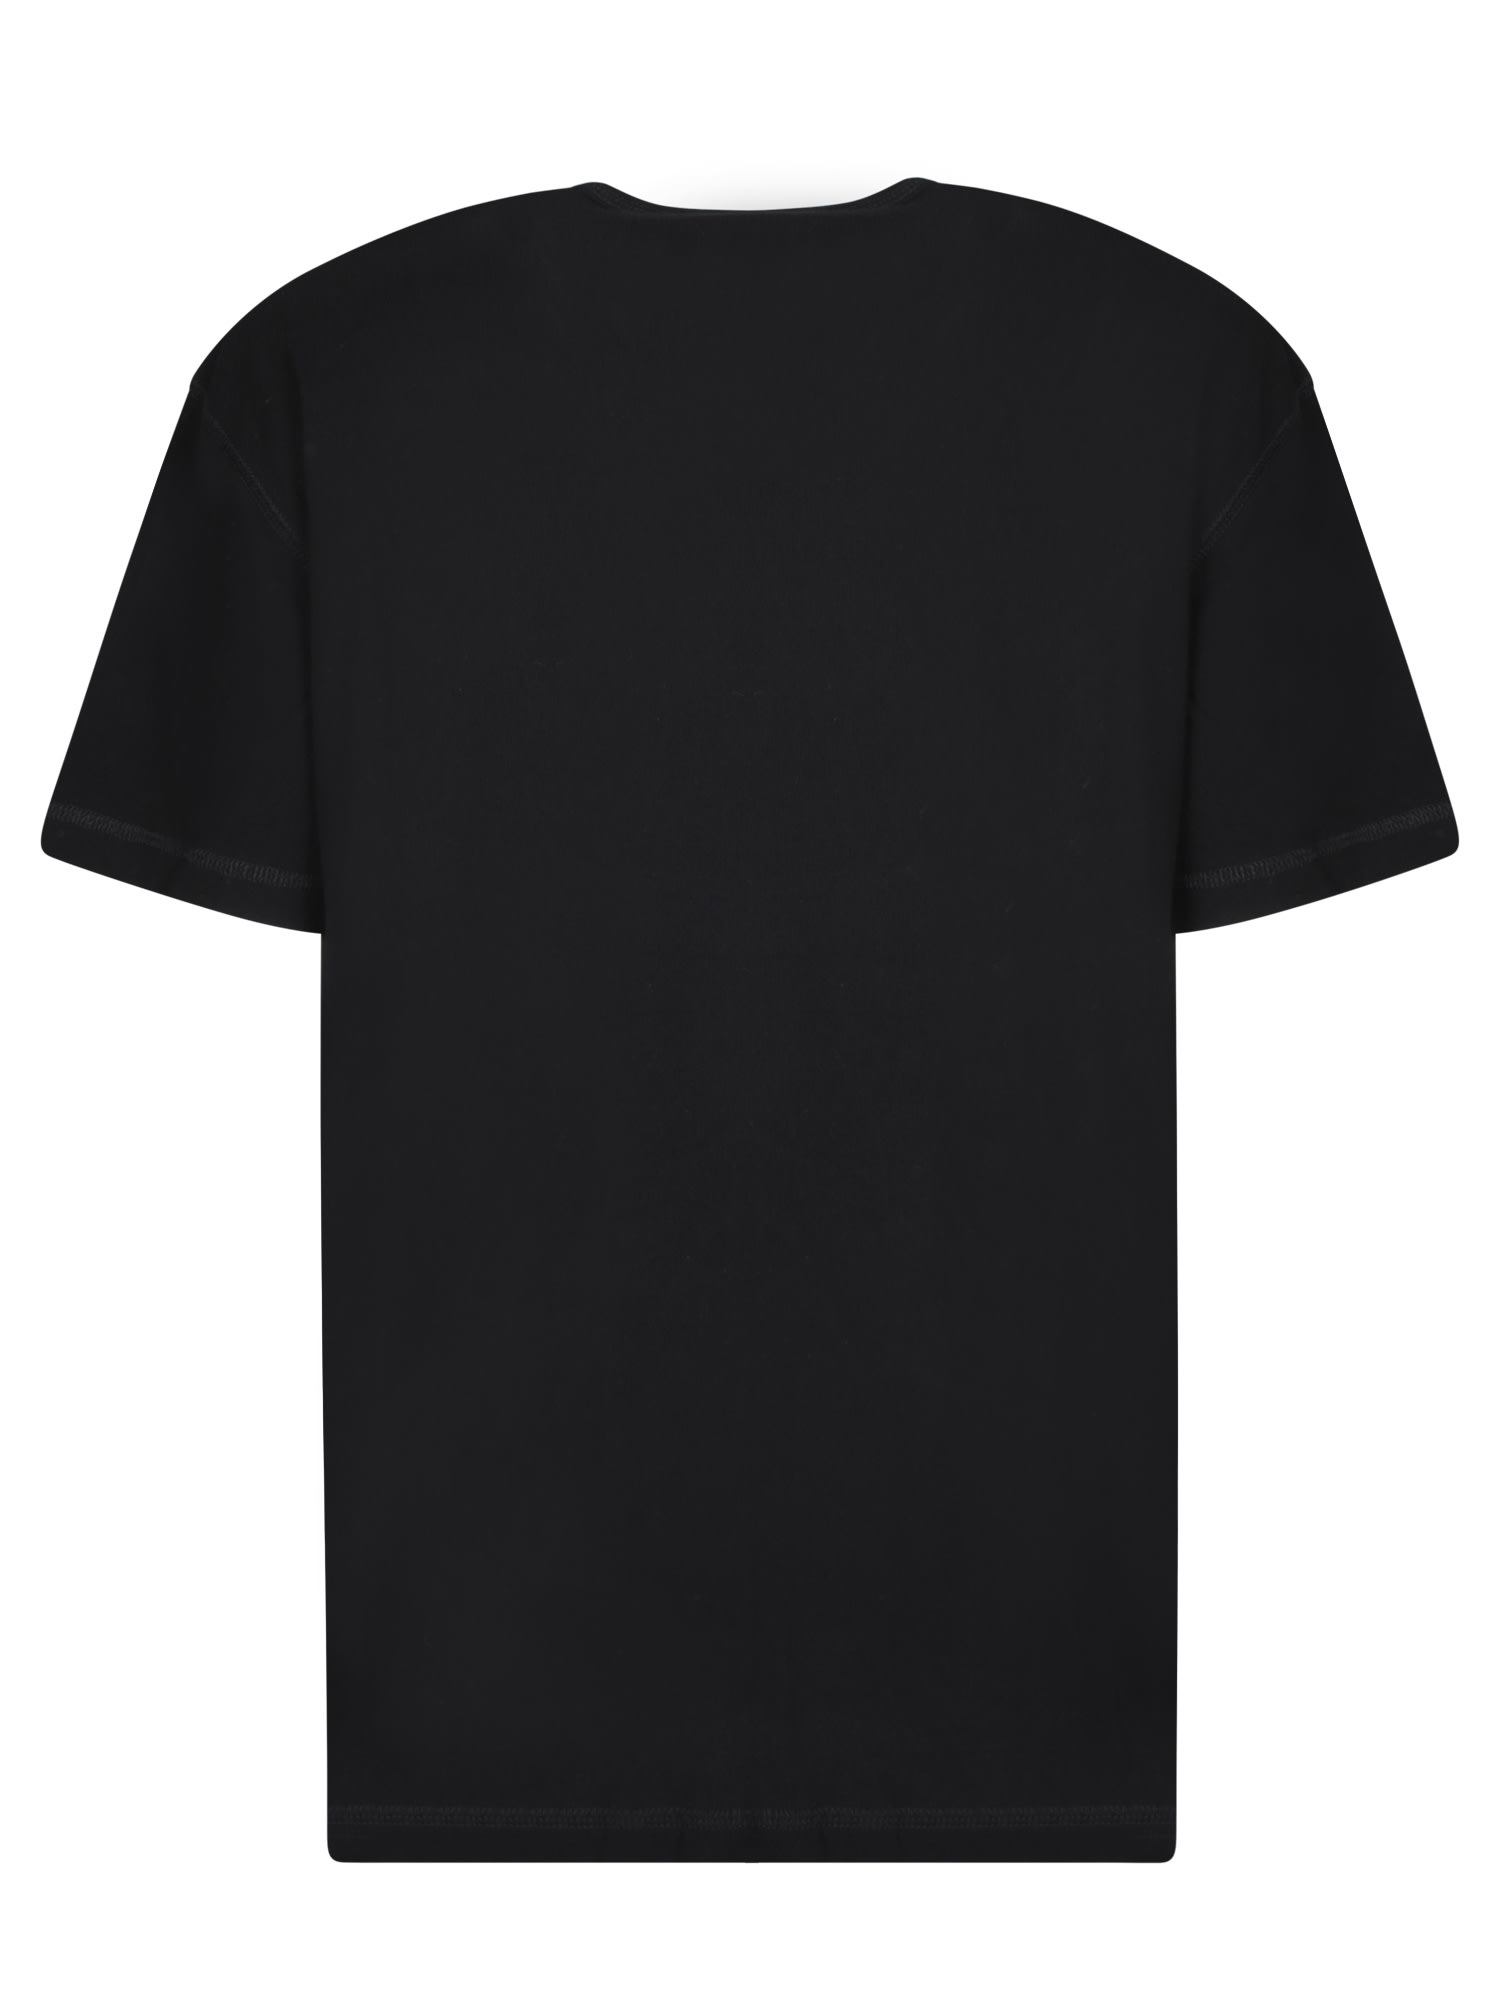 Shop Costumein Liam Black Cotton T-shirt